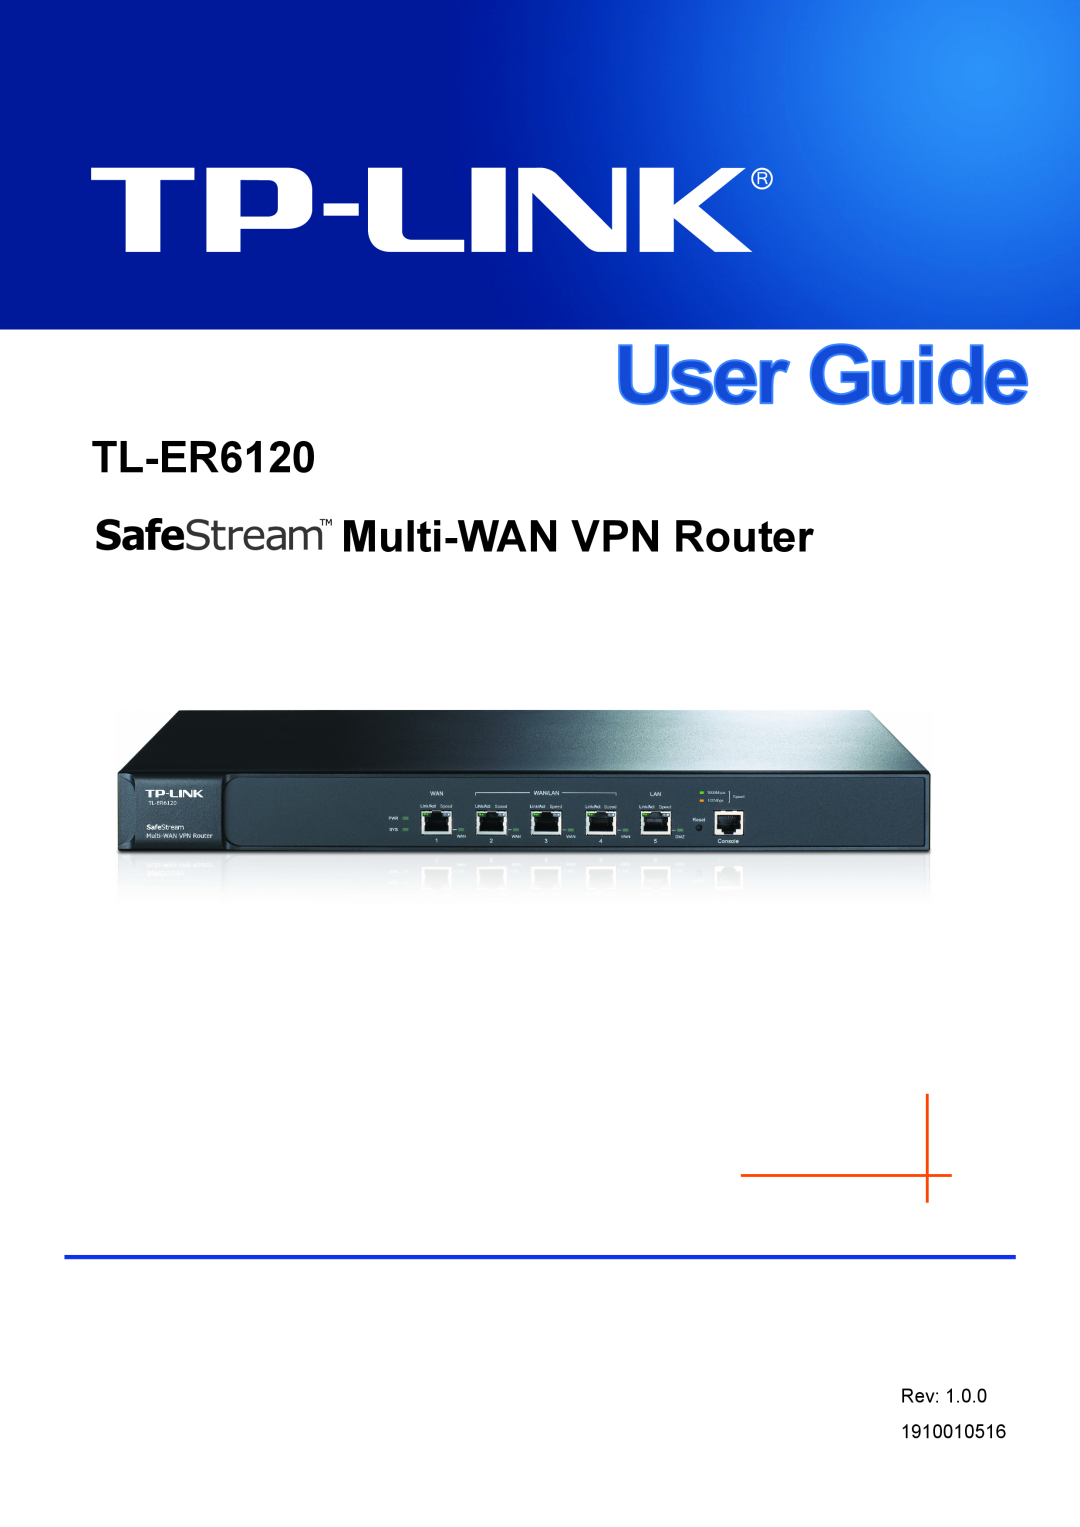 TP-Link manual TL-ER6120 Multi-WAN VPN Router, Rev 1910010516 